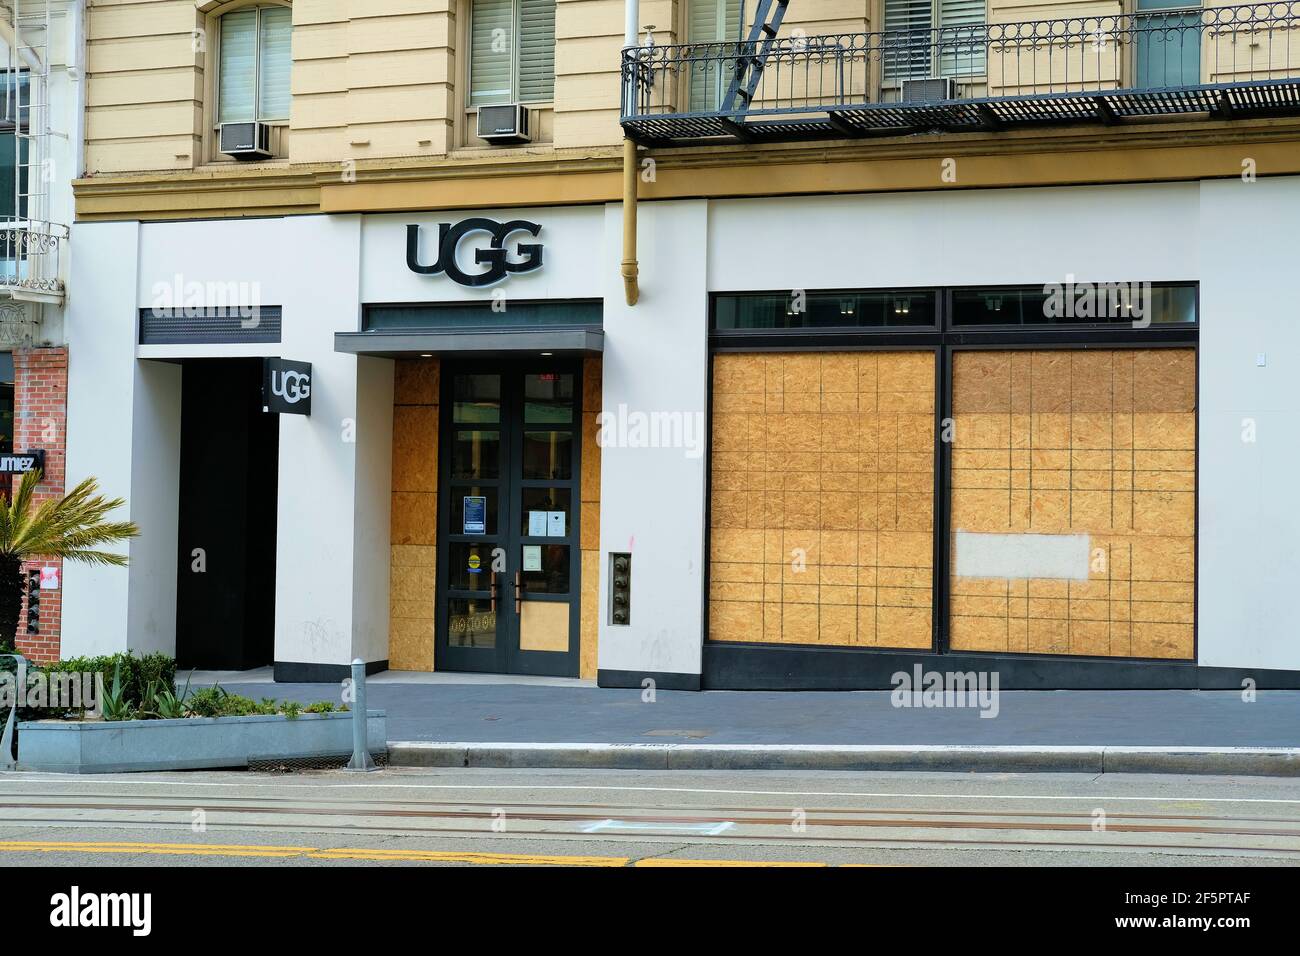 Außenansicht eines vernagelten UGG-Geschäfts in der Nähe des Union Square  in der Innenstadt von San Francisco, Kalifornien; Angst vor Demonstranten,  Plünderungen und sozialen Unruhen Stockfotografie - Alamy